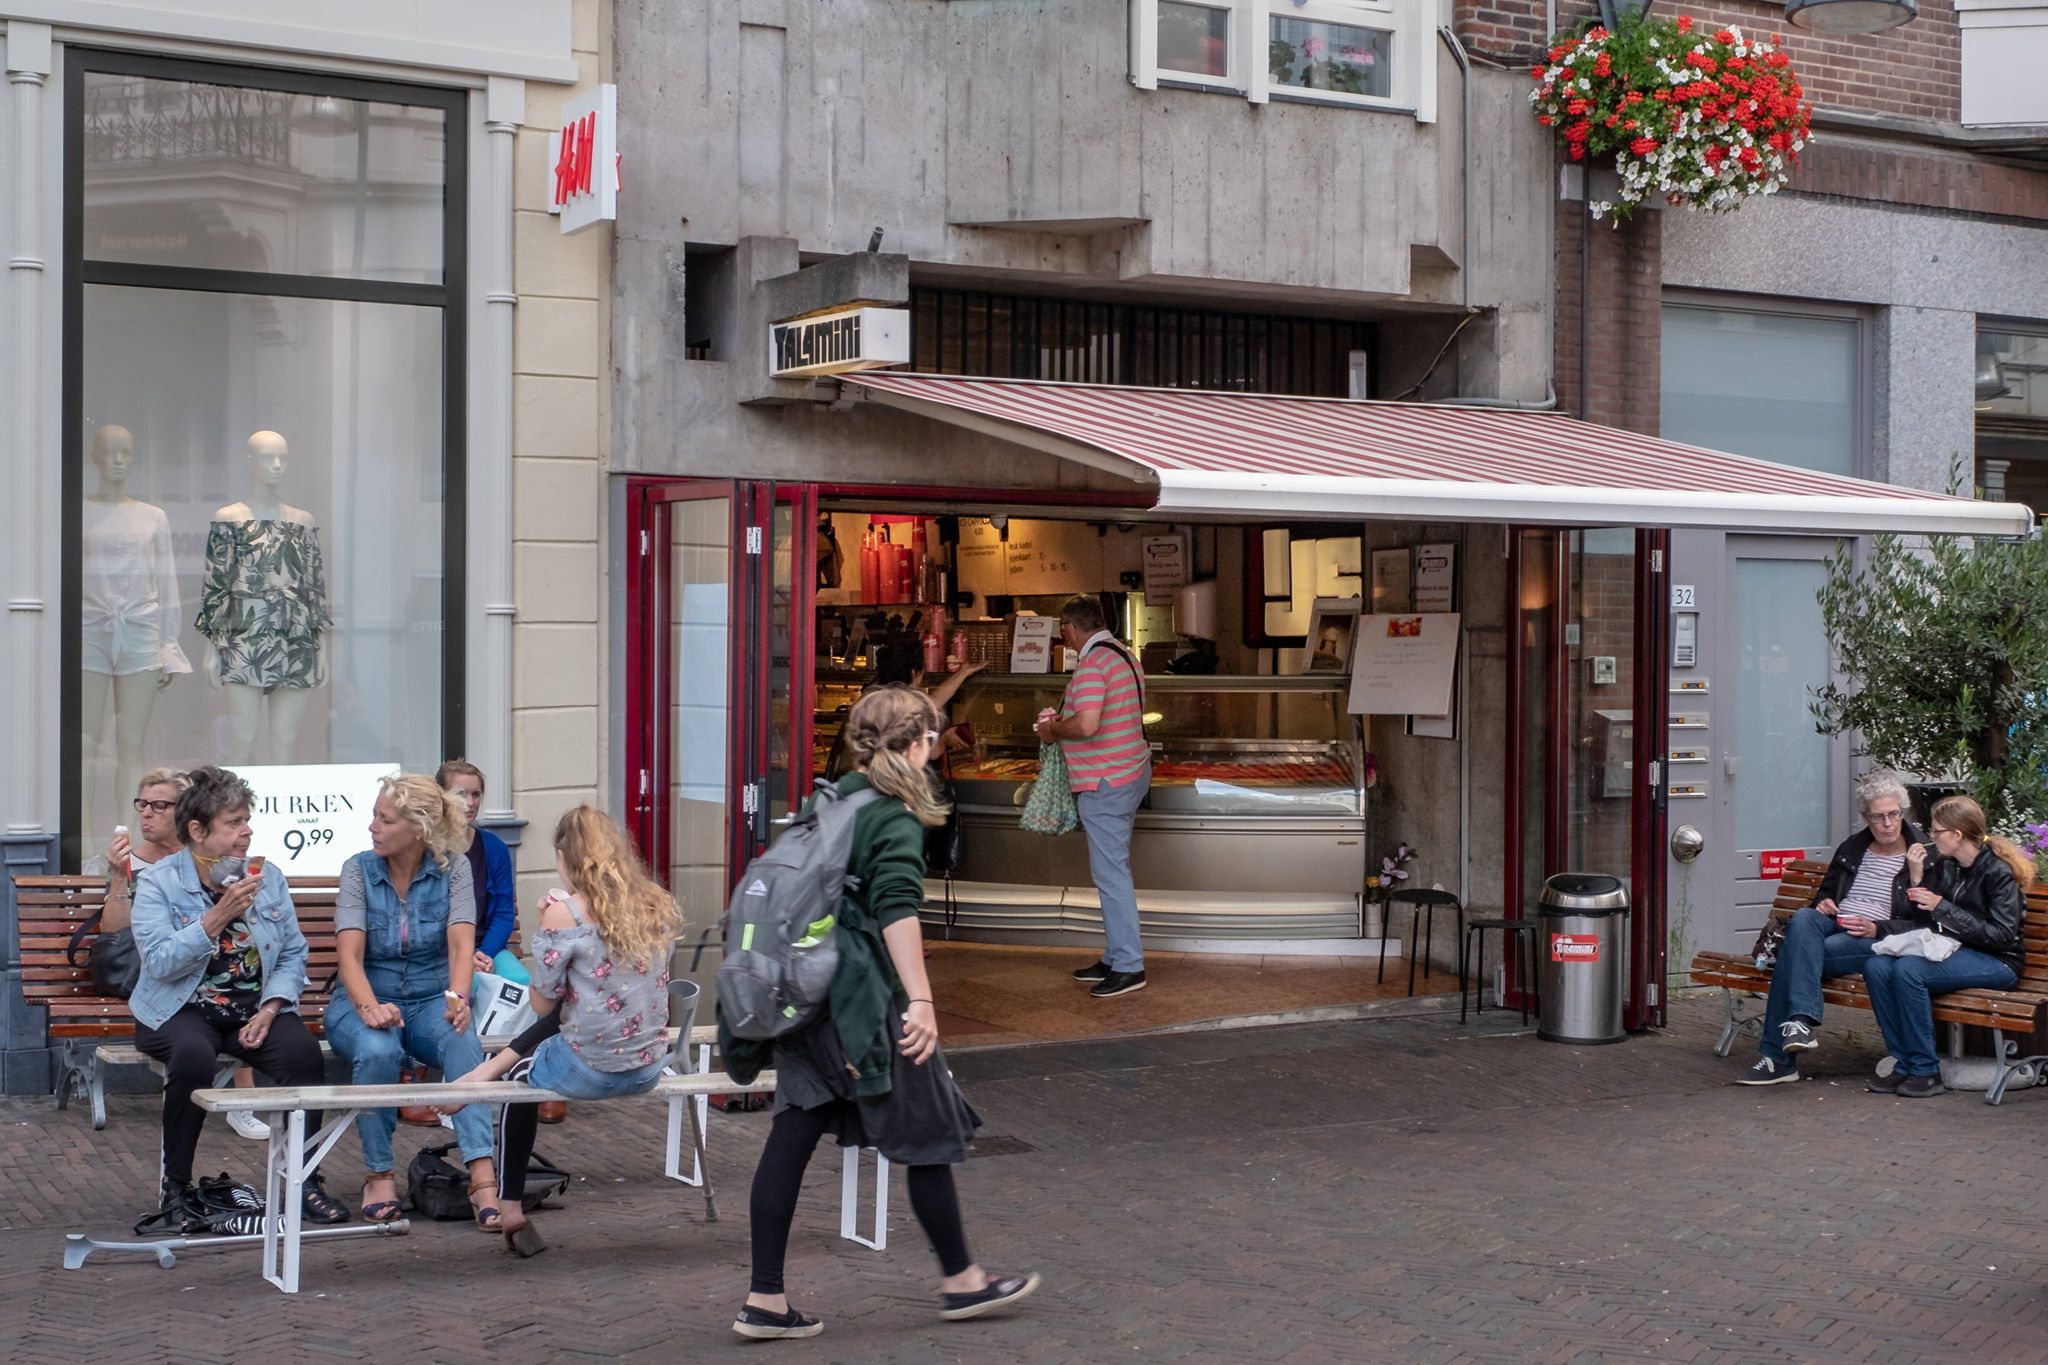 Talamini en meer winkels in Deventer vind je bij Shoppen in Deventer